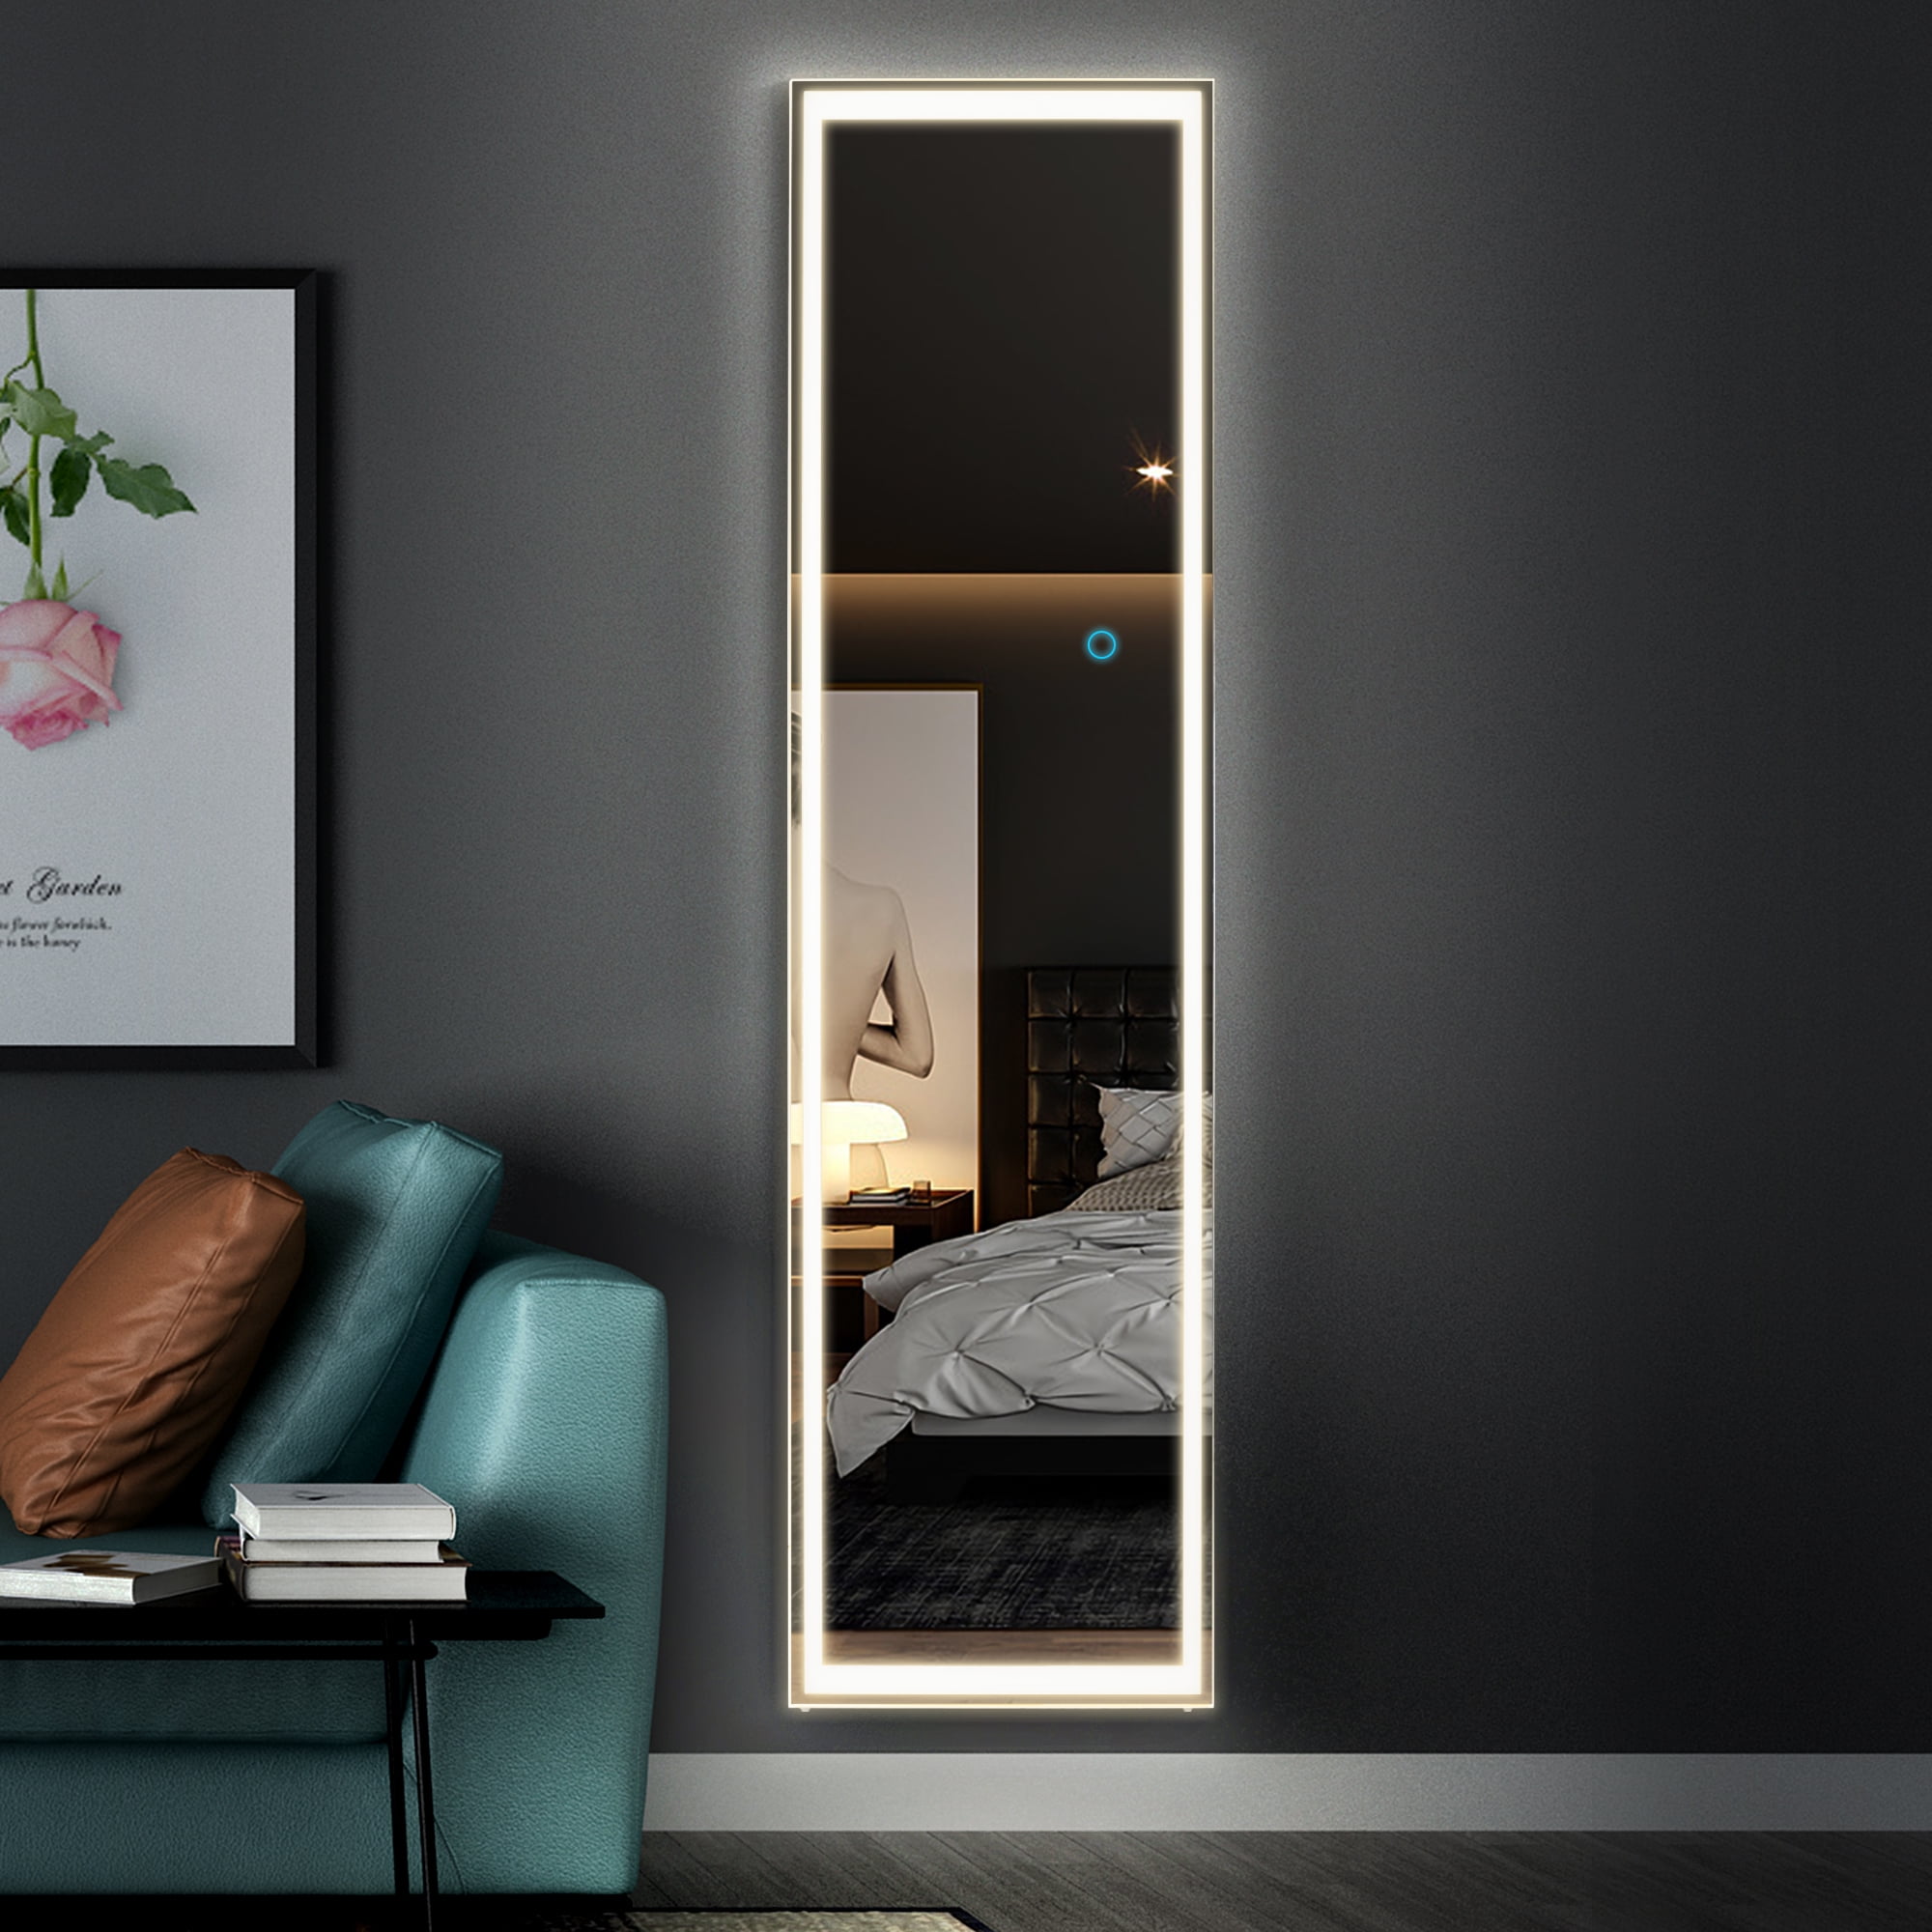 Espejo de suelo independiente para pared,Espejo cosmético iluminado,Espejo Grande en tamaño completo,Espejo de Pie para dormitorio,Blanco LVSOMT 160 x 50 cm Espejo Cuerpo entero Con iluminación LED 